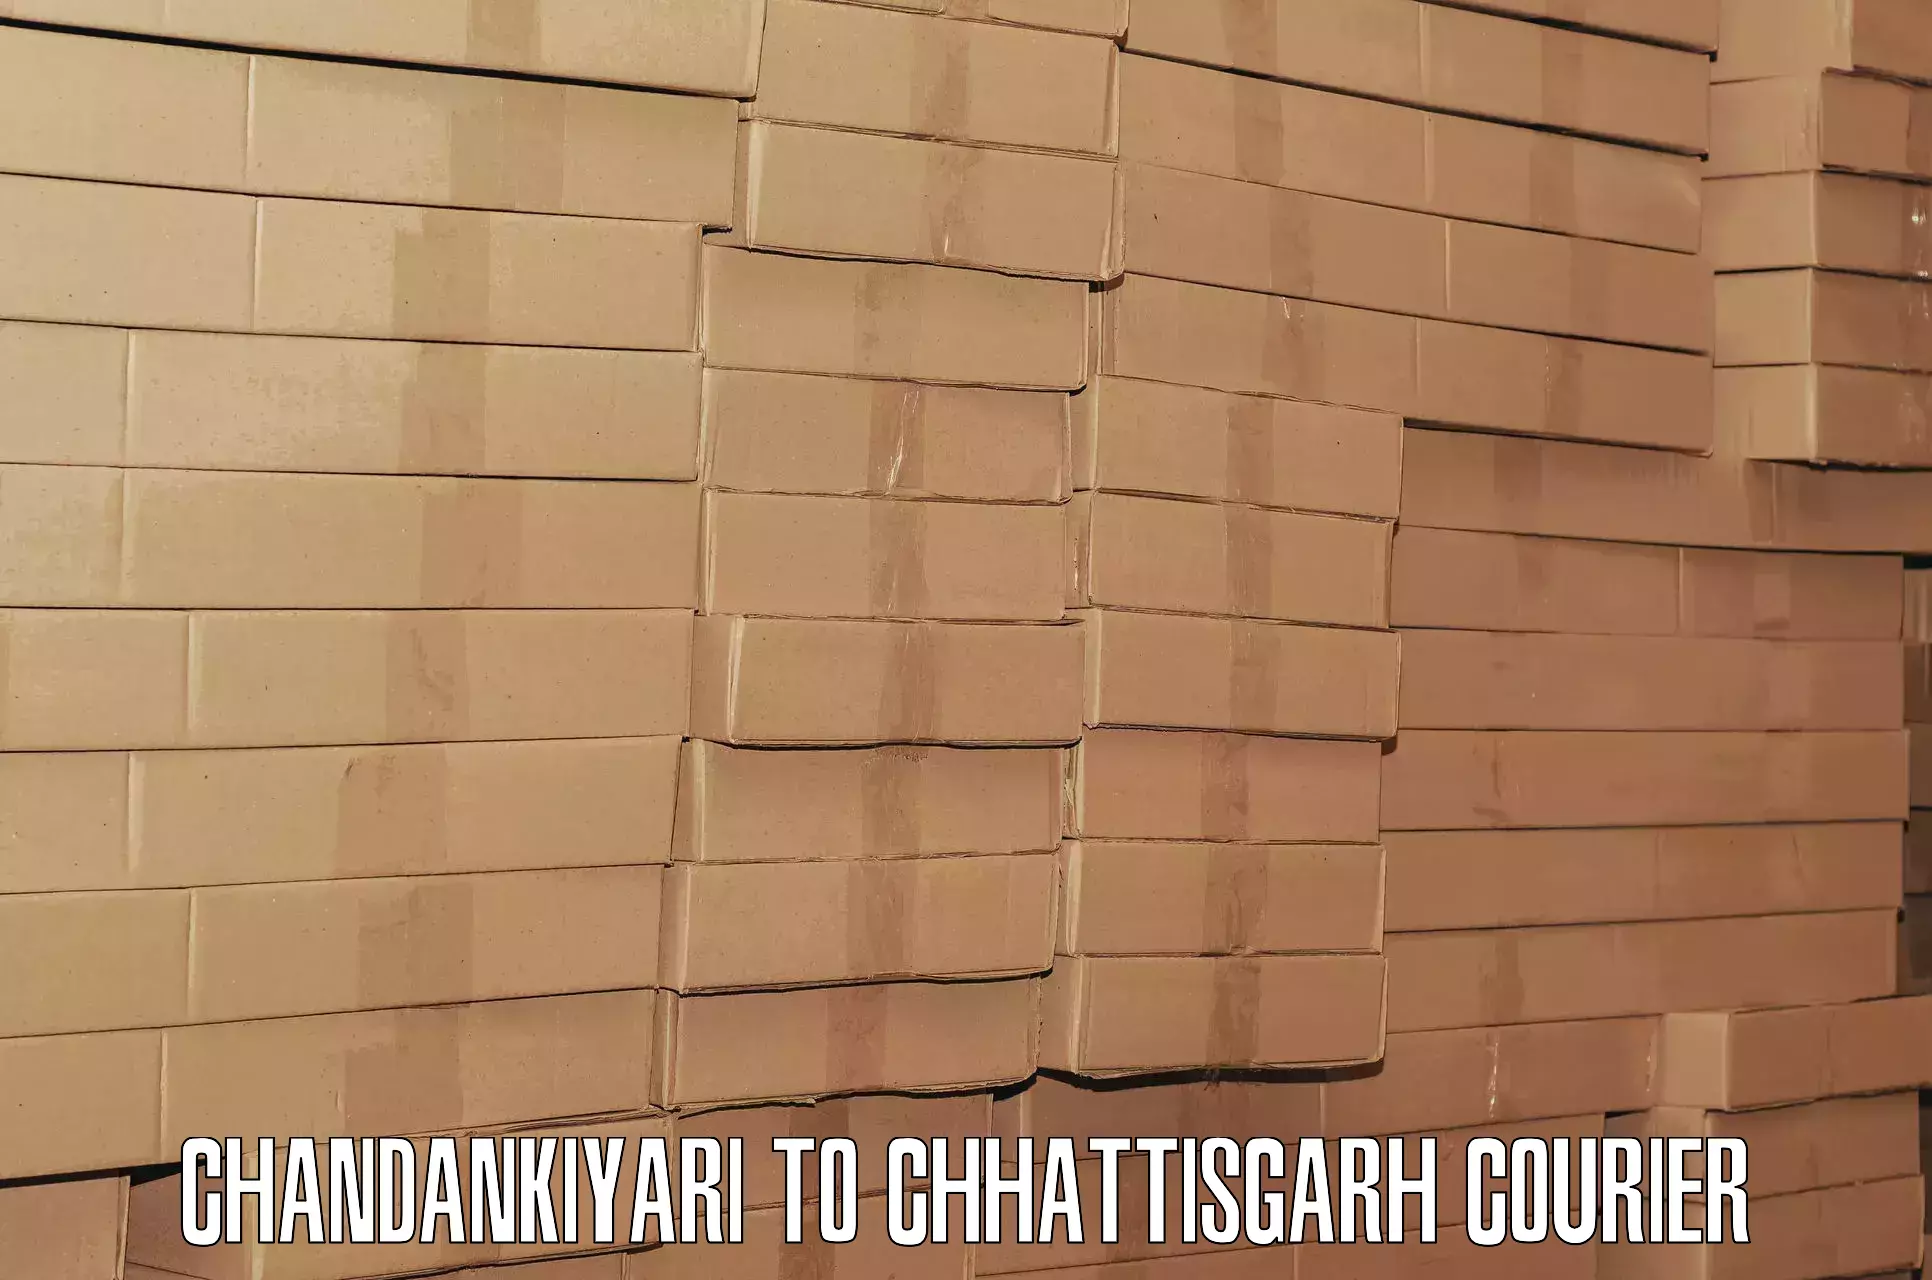 High-quality baggage shipment Chandankiyari to Basna